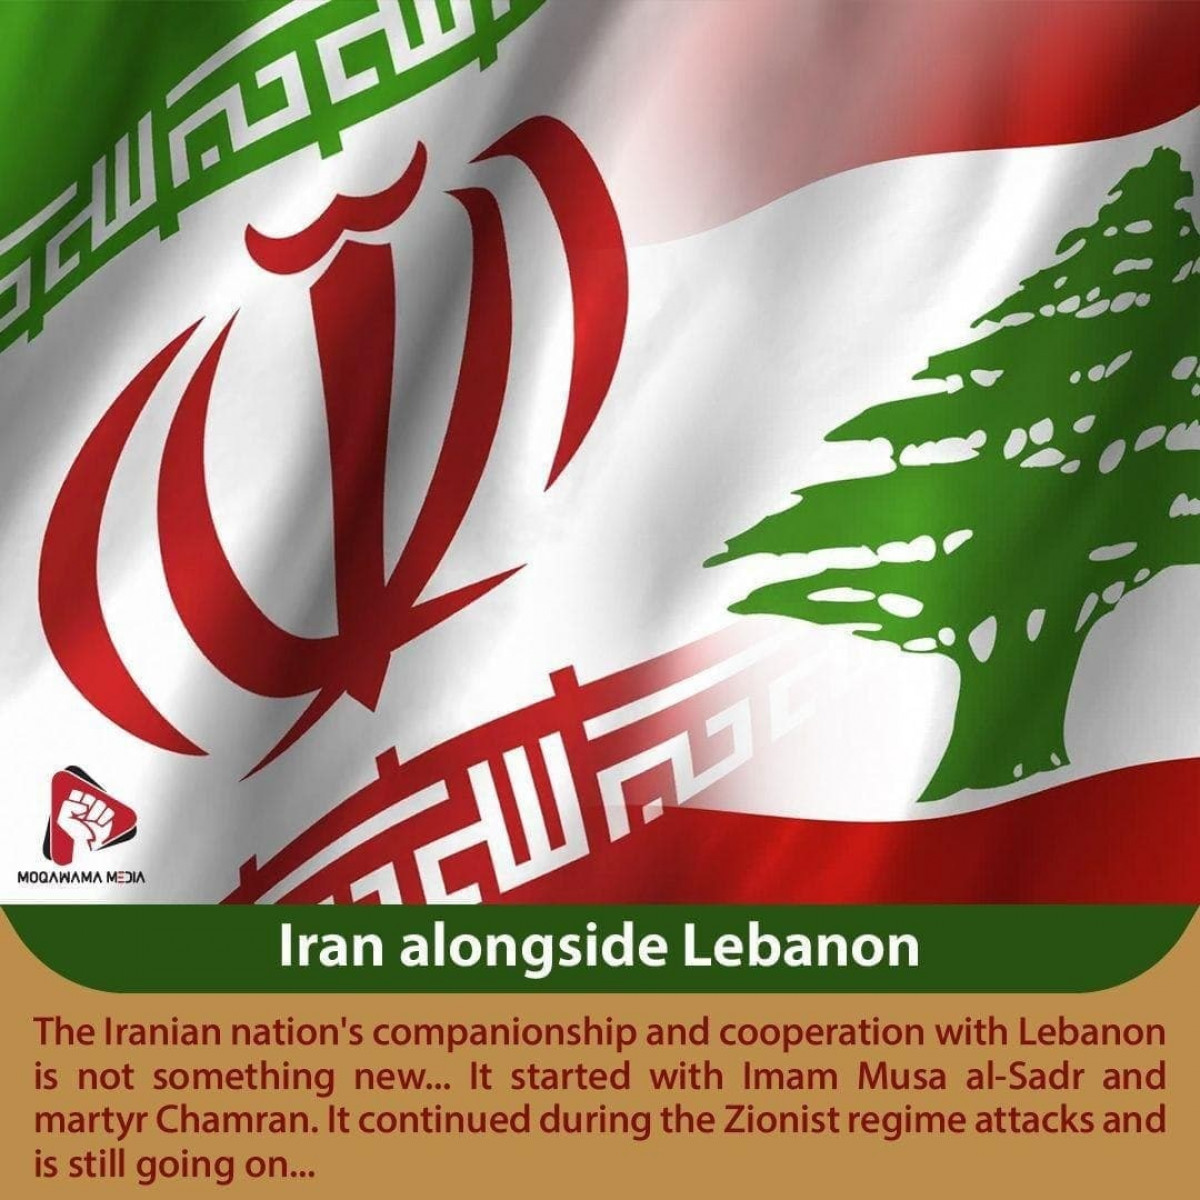 Iran alongside Lebanon